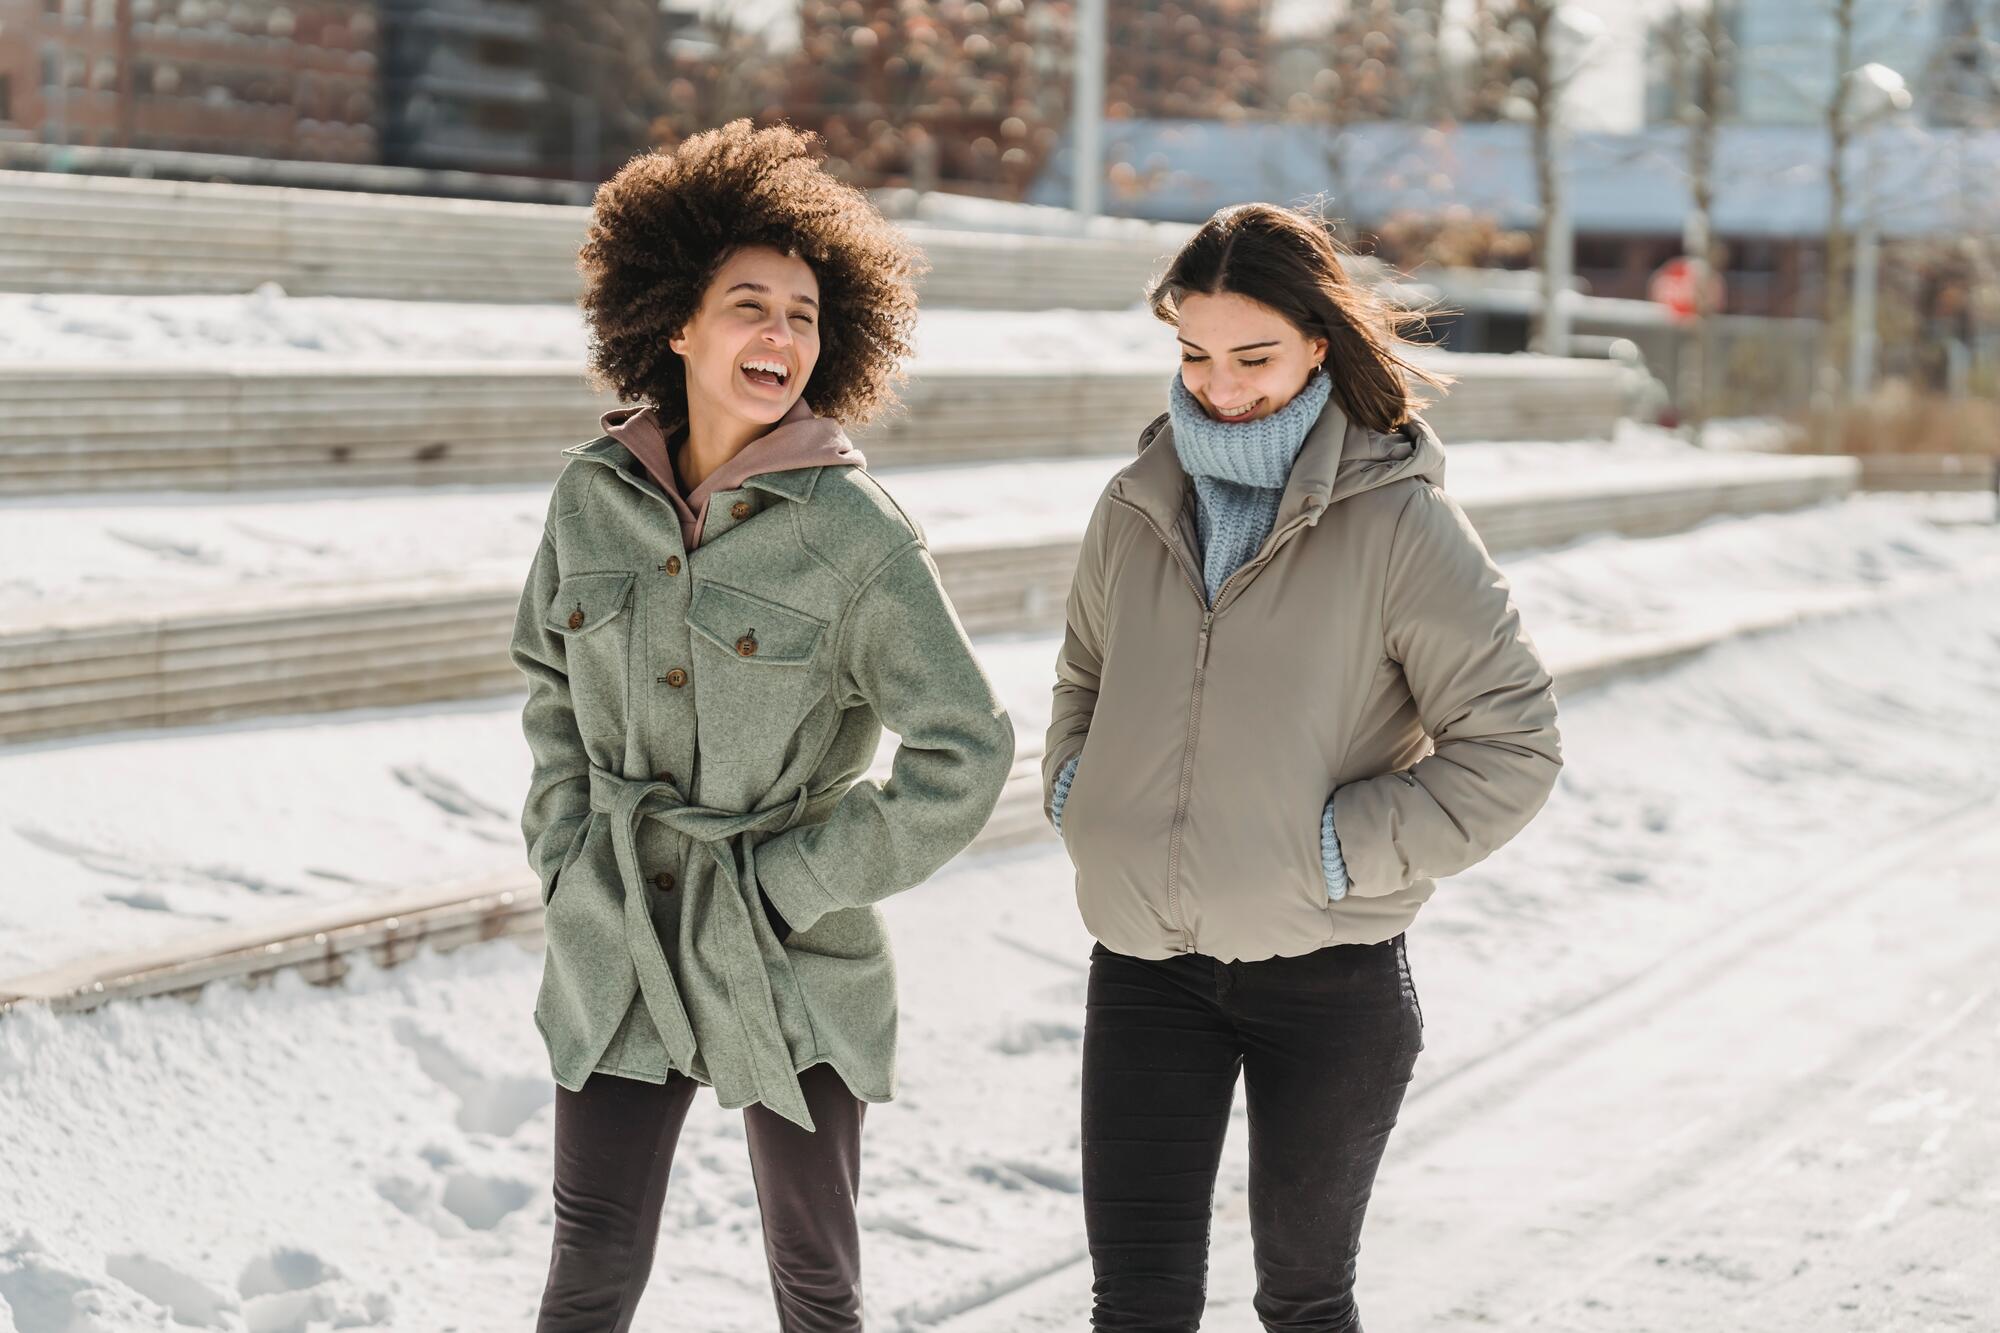 Two women walking in winter weather.